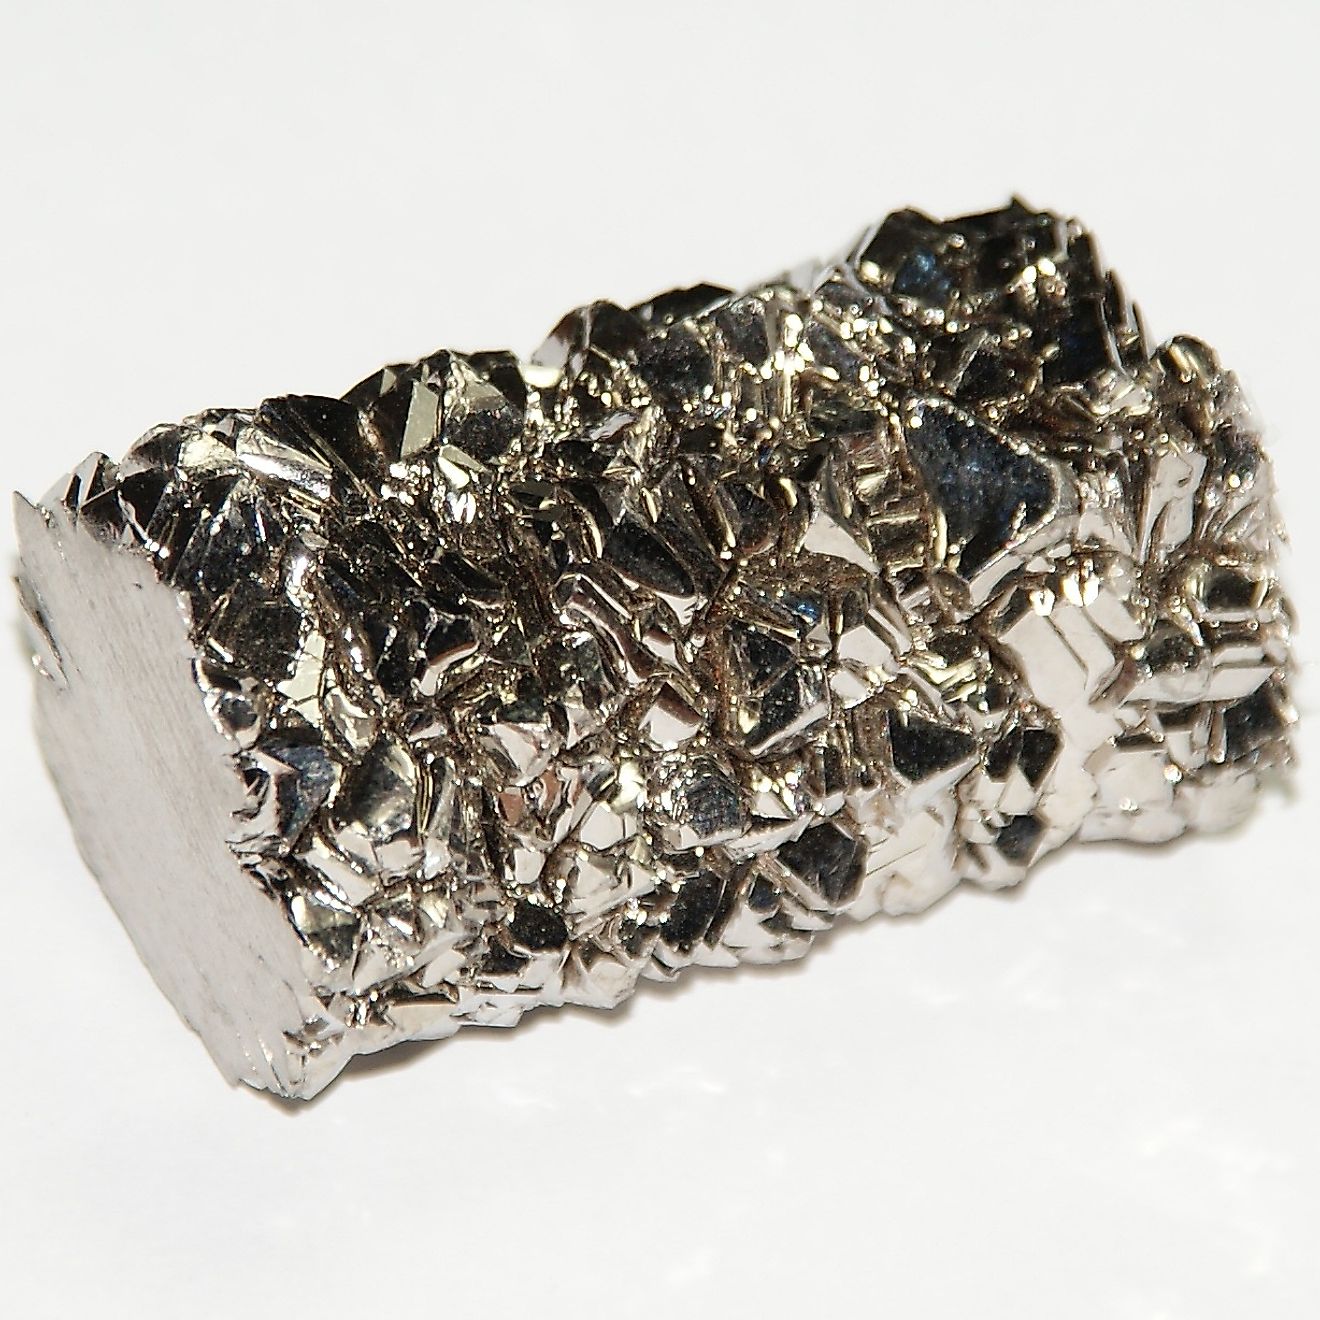 Crystals of titanium.